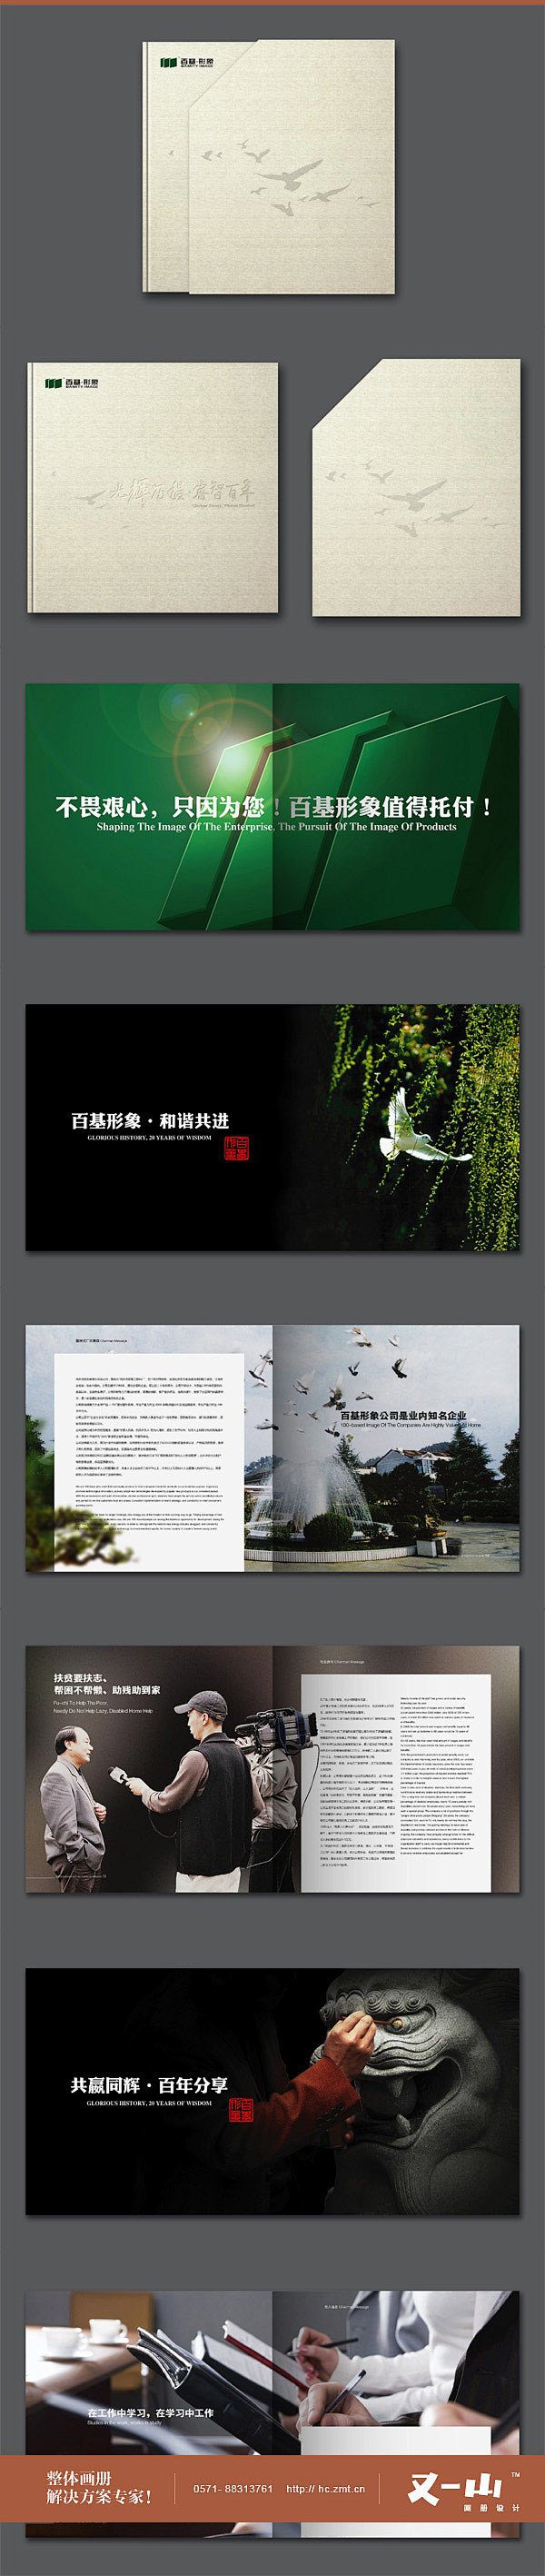 杭州画册设计 杭州样本设计公司 杭州画册...